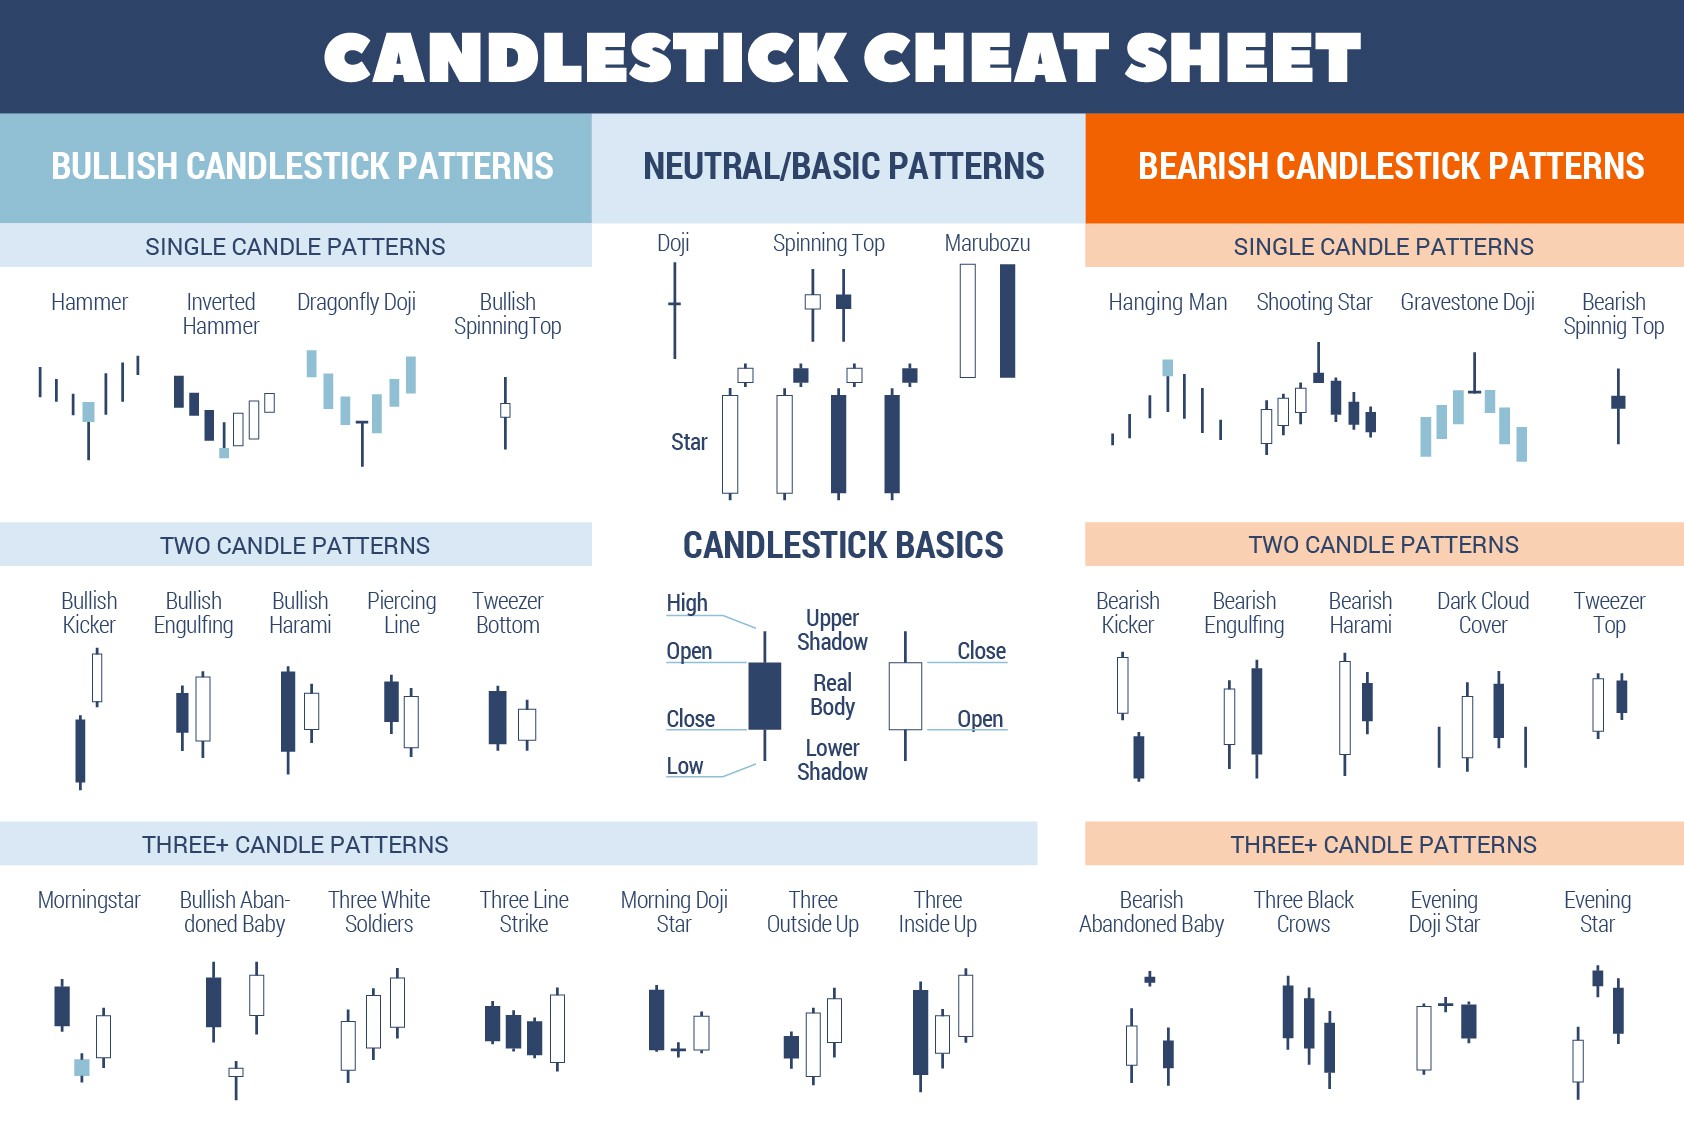 Candlestick-Cheat-Sheet_web-01.jpg